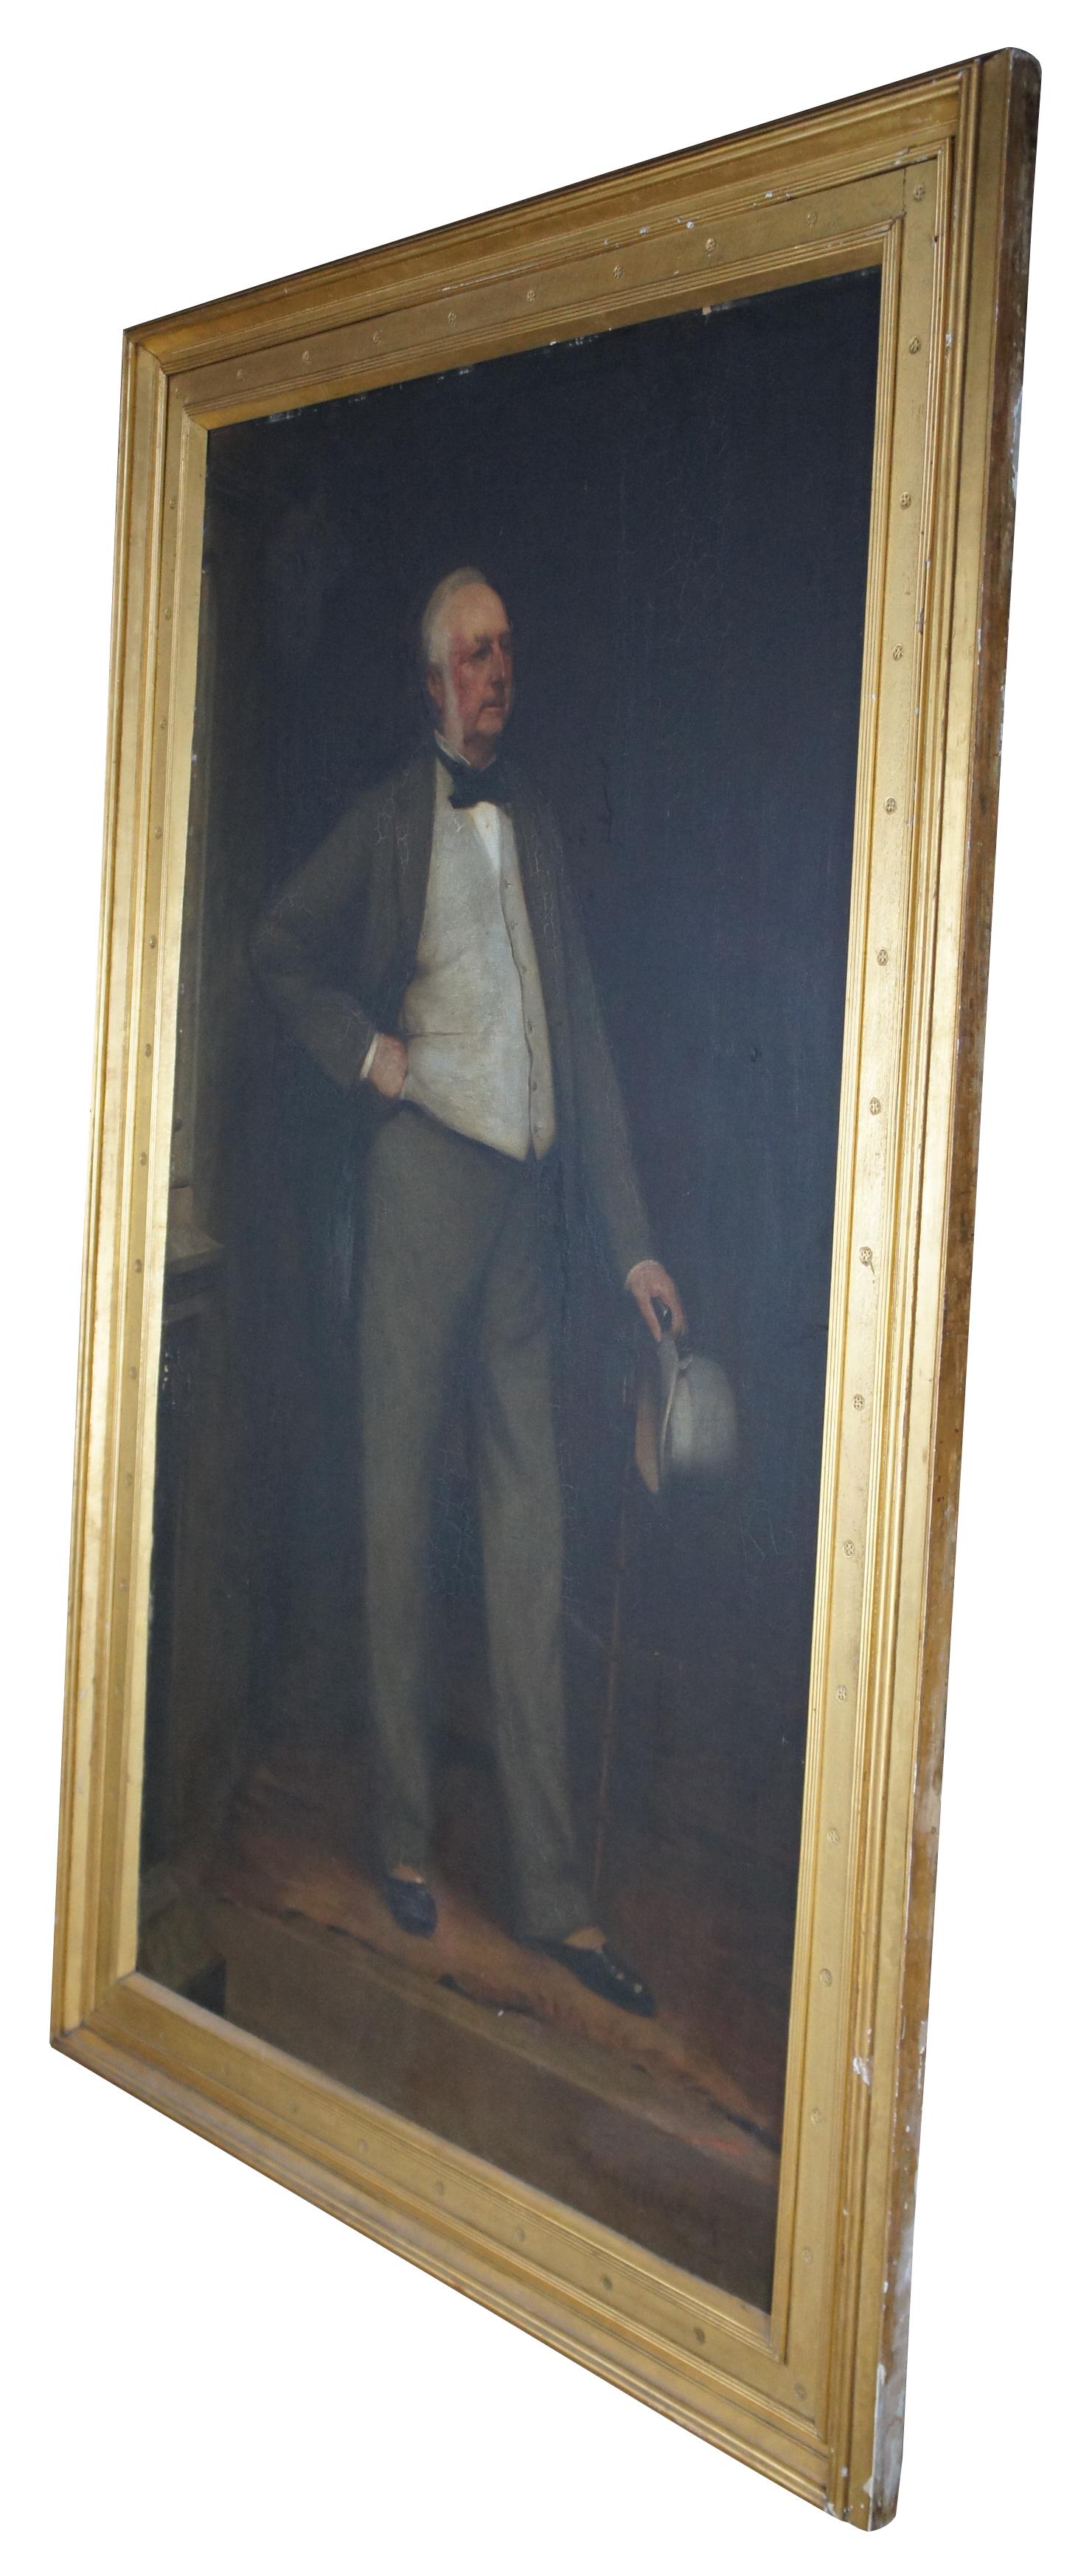 Monumentale huile sur toile ancienne de 1890 représentant Robert Hughes (1816-1893) par Hugh de Twenebrokes Glazebrook (1855-1937). Peint quelques années avant la mort de Heath, il présente un portrait en pied de celui-ci en tenue de soirée, avec